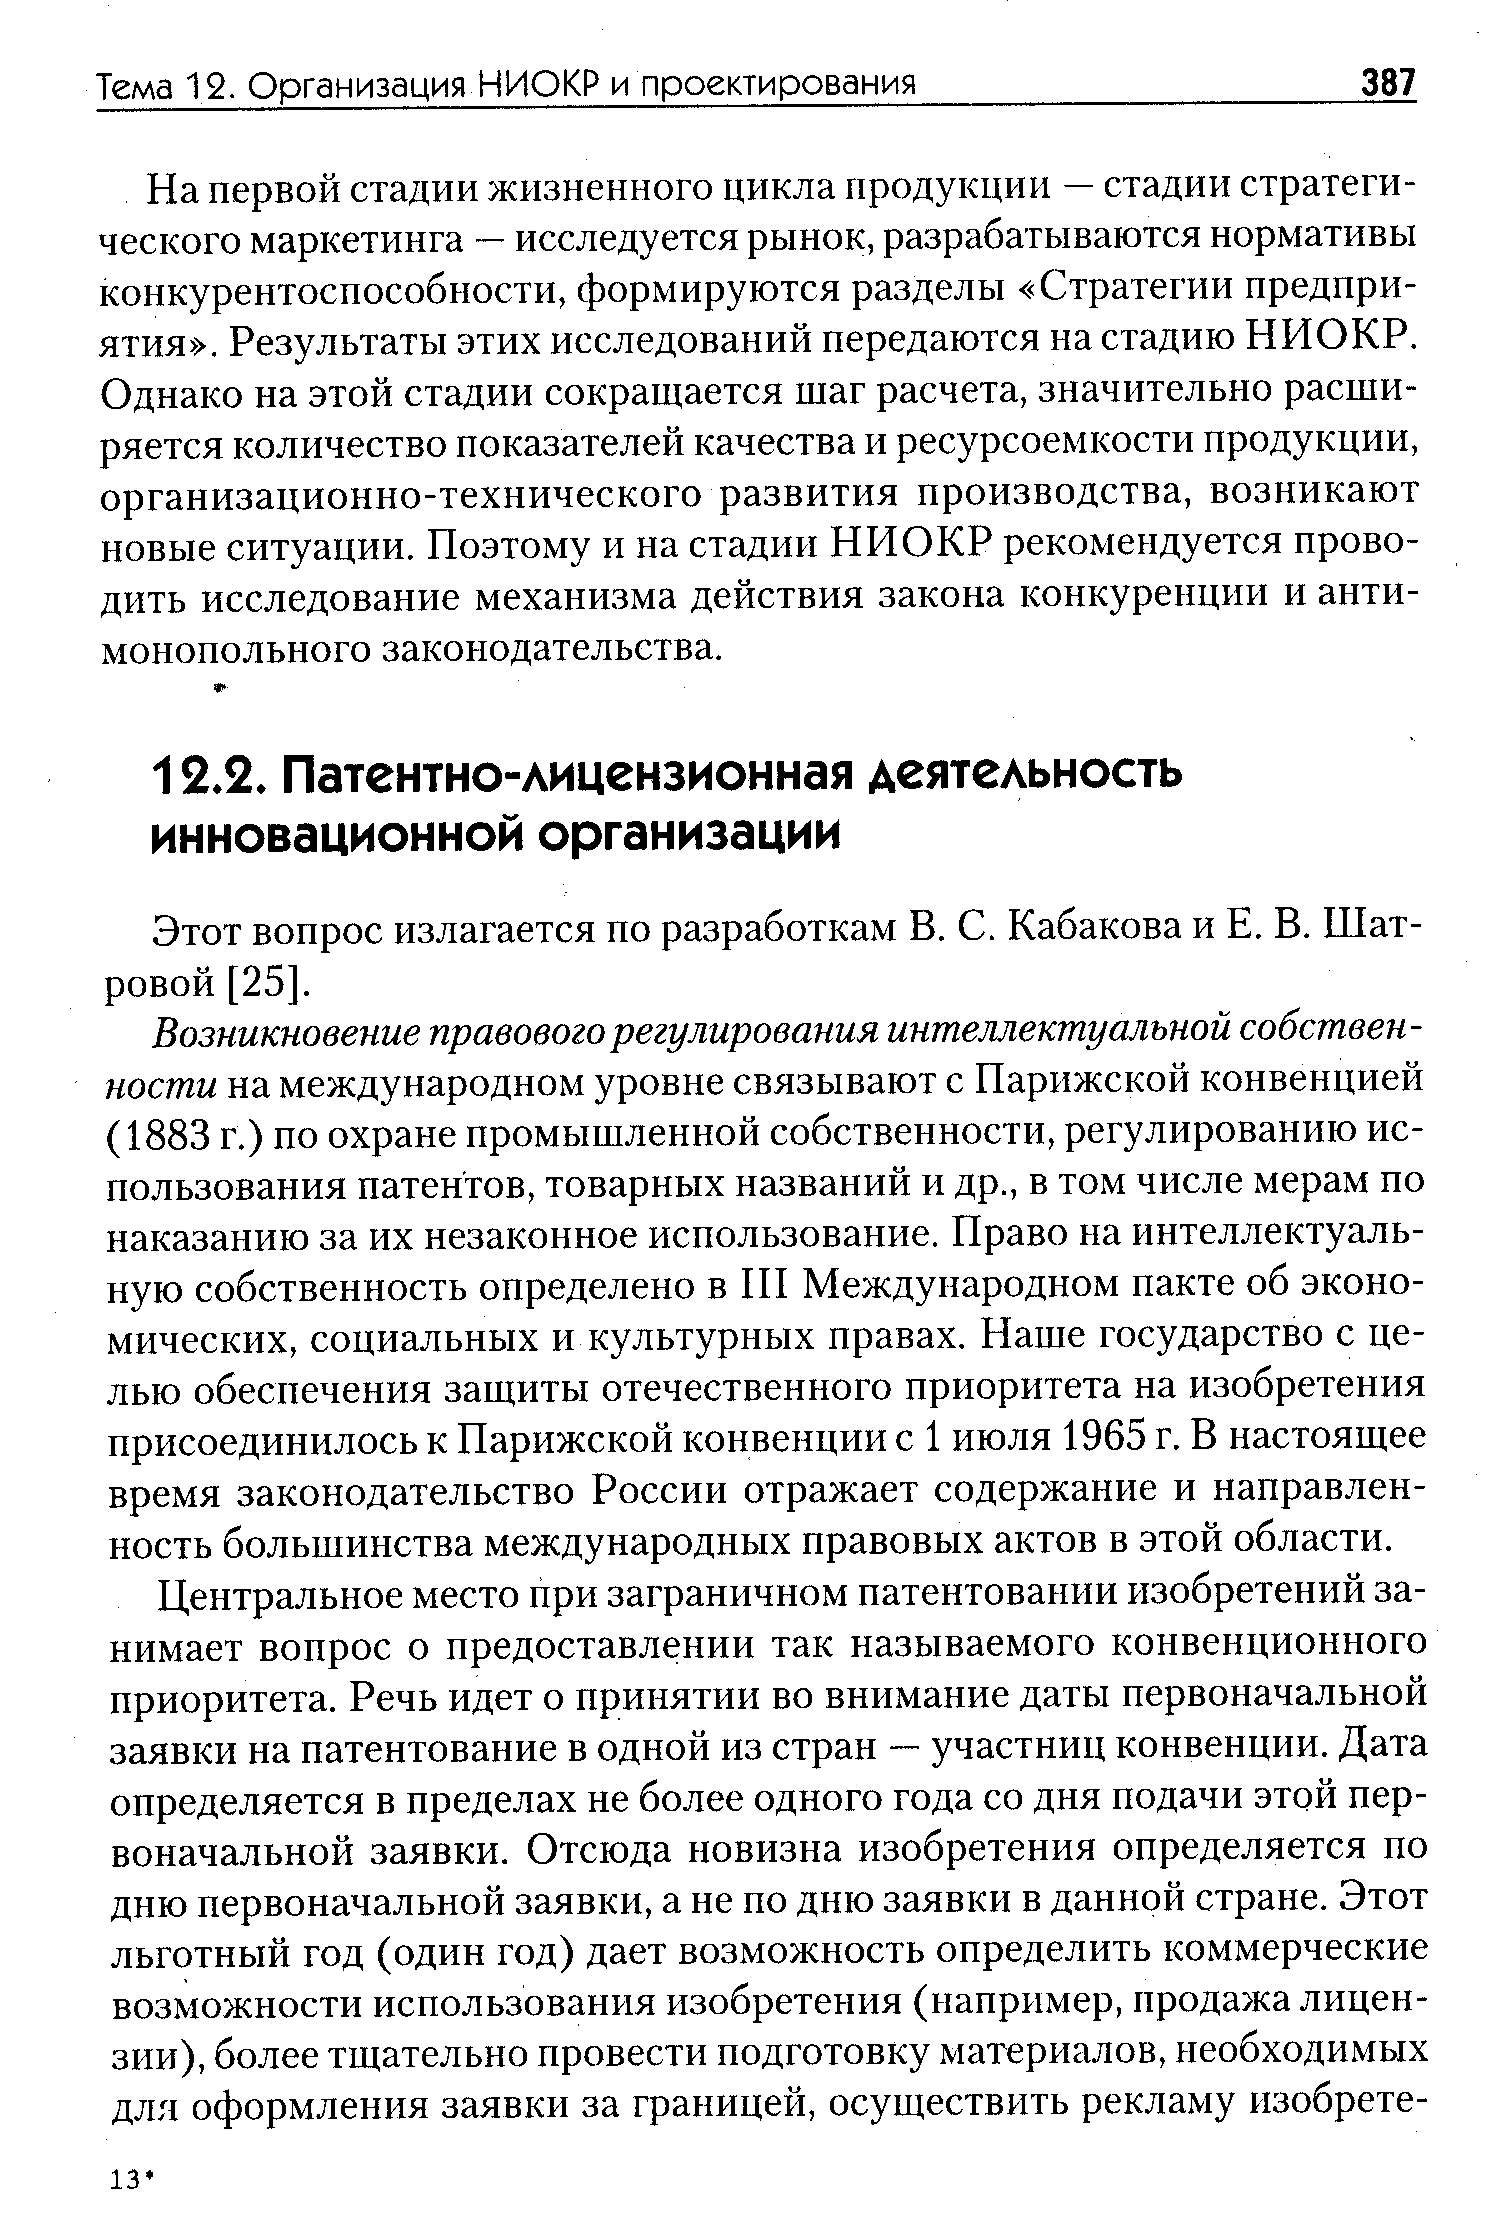 Этот вопрос излагается по разработкам В. С. Кабакова и Е. В. Шатровой [25].
